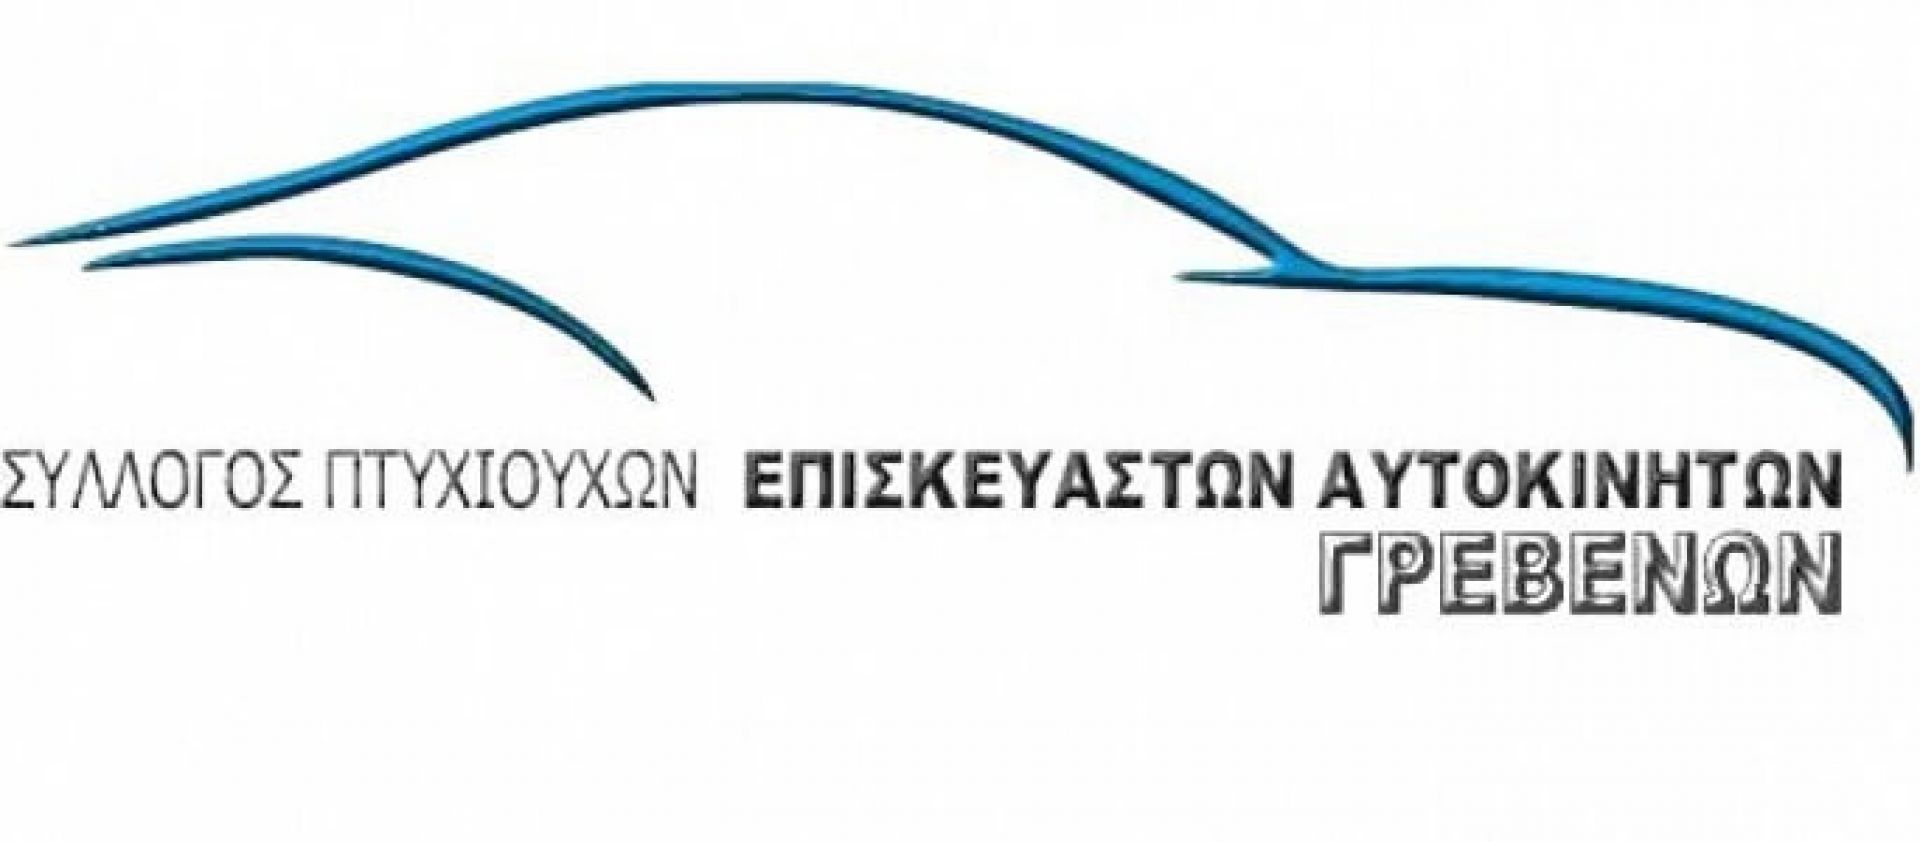 Σύλλογος επισκευαστών αυτοκινήτων Γρεβενών: Γενική συνέλευση την Τρίτη 12 Δεκεμβρίου